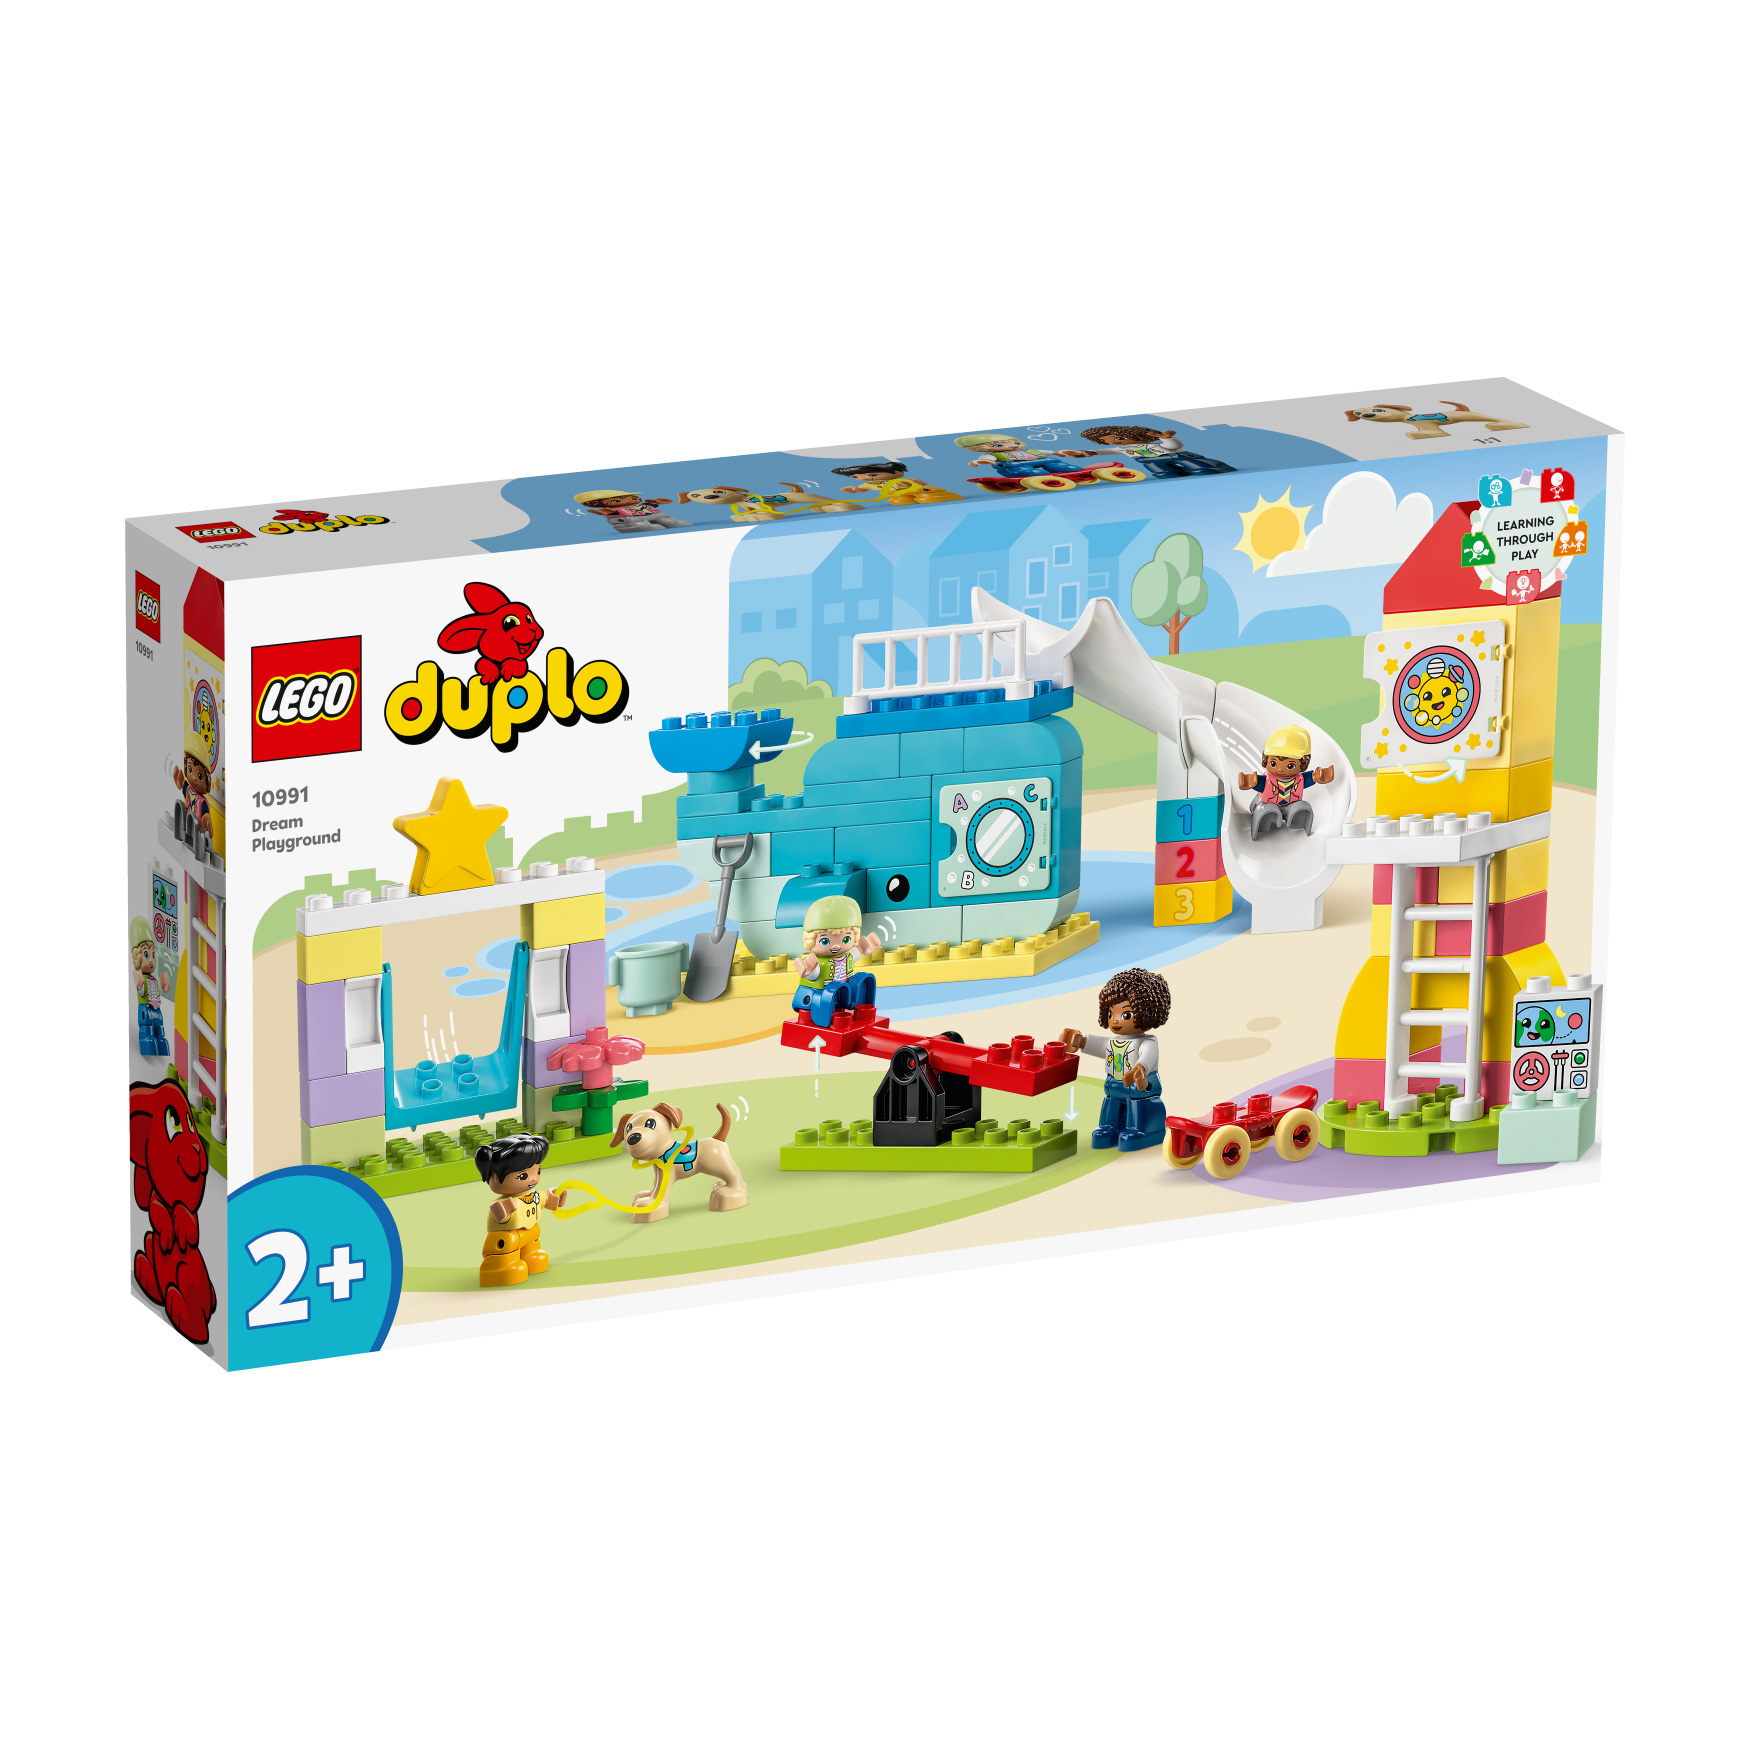 LEGO® DUPLO® 10991 Traumspielplatz günstig kaufen!